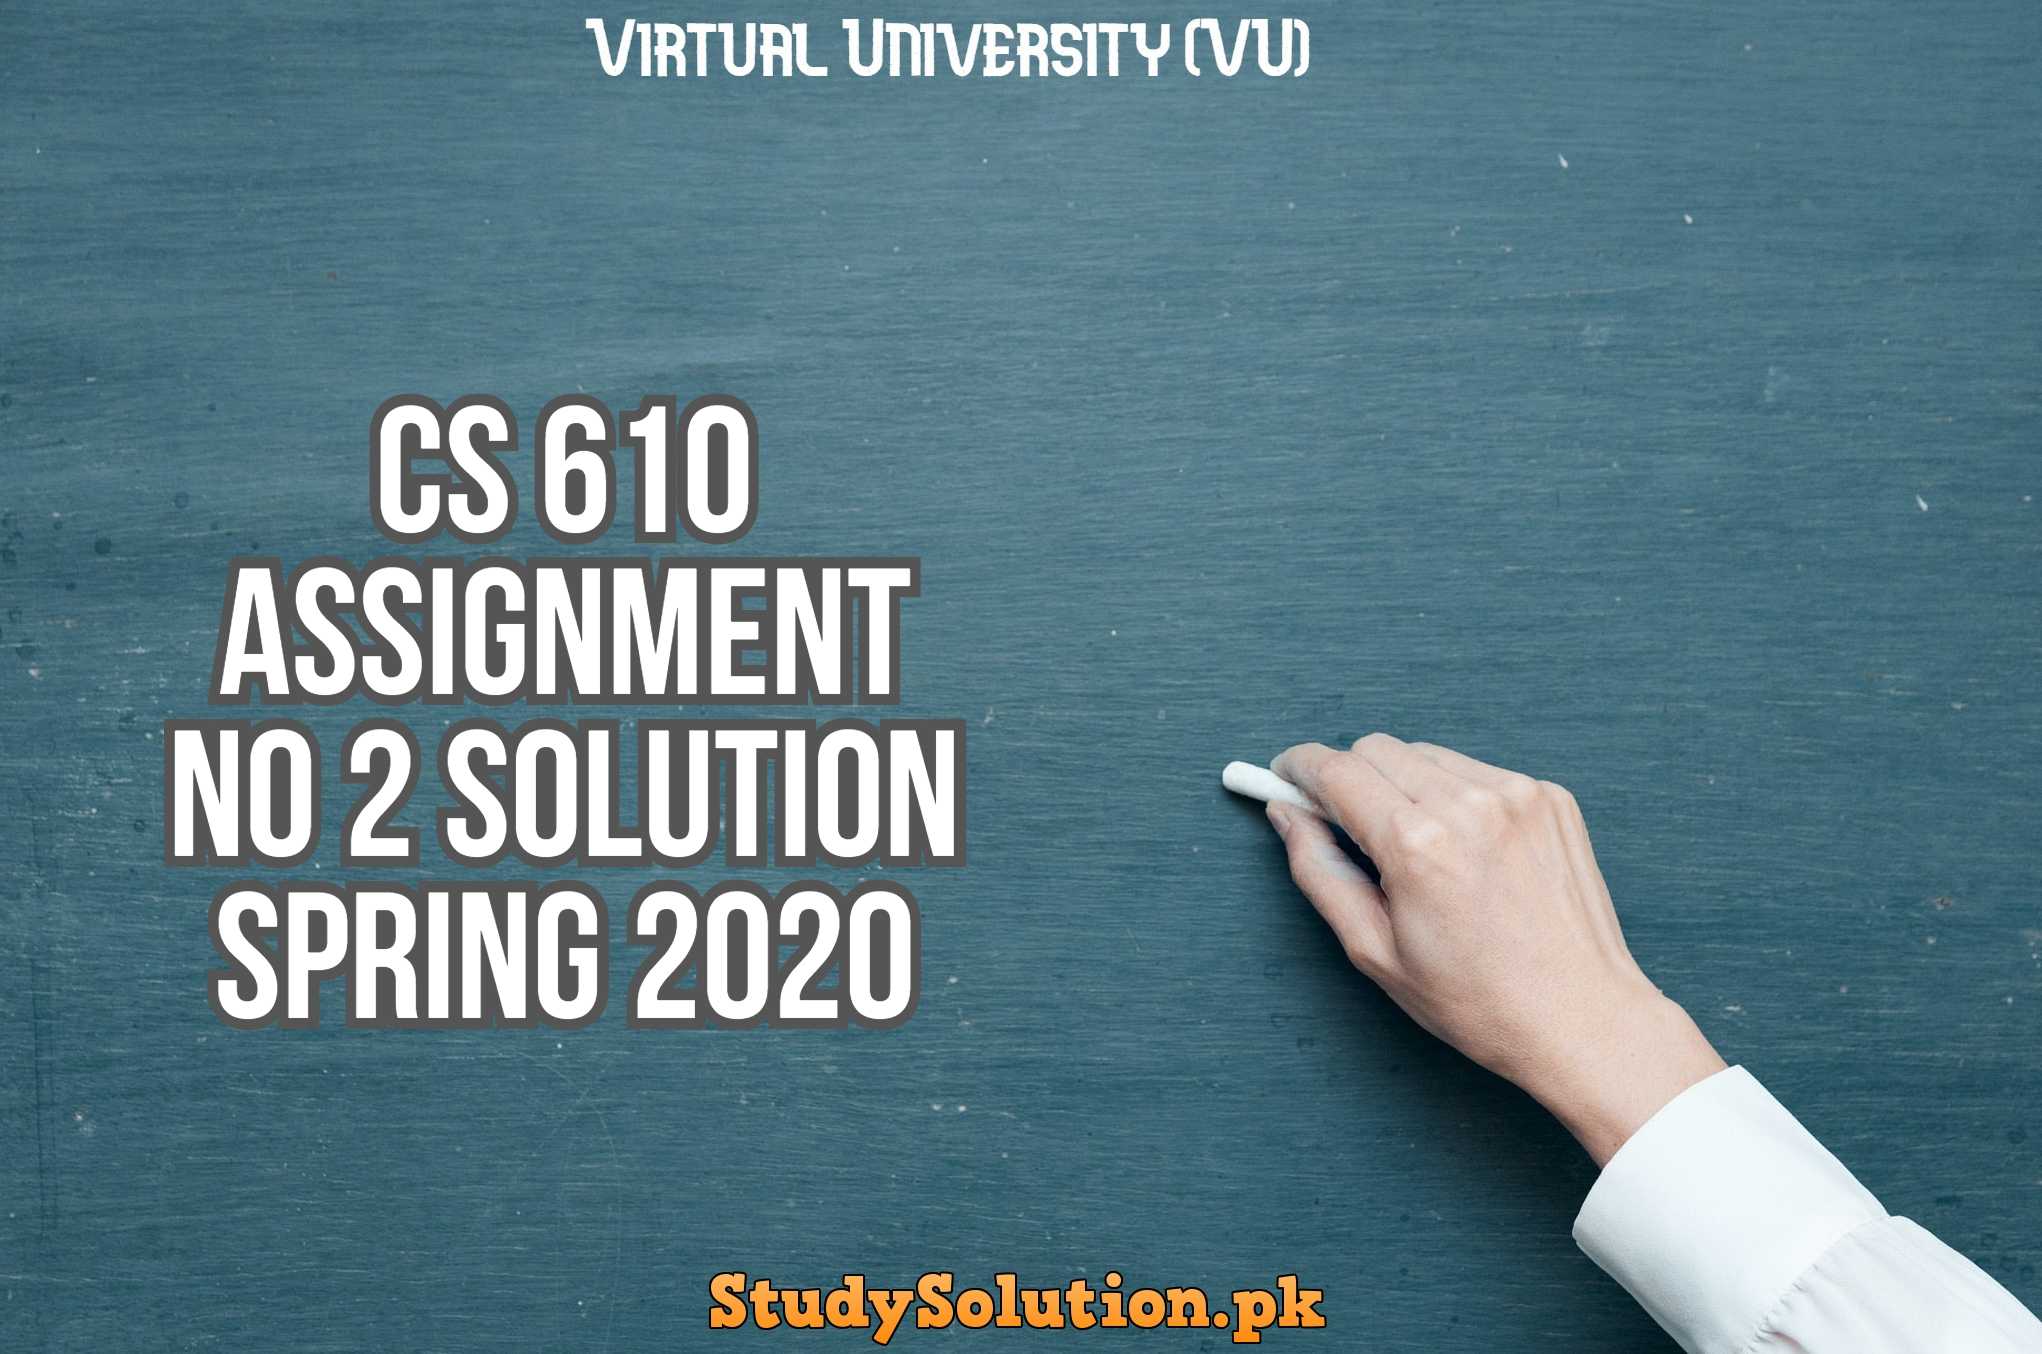 CS 610 Assignment No 2 Solution Spring 2020